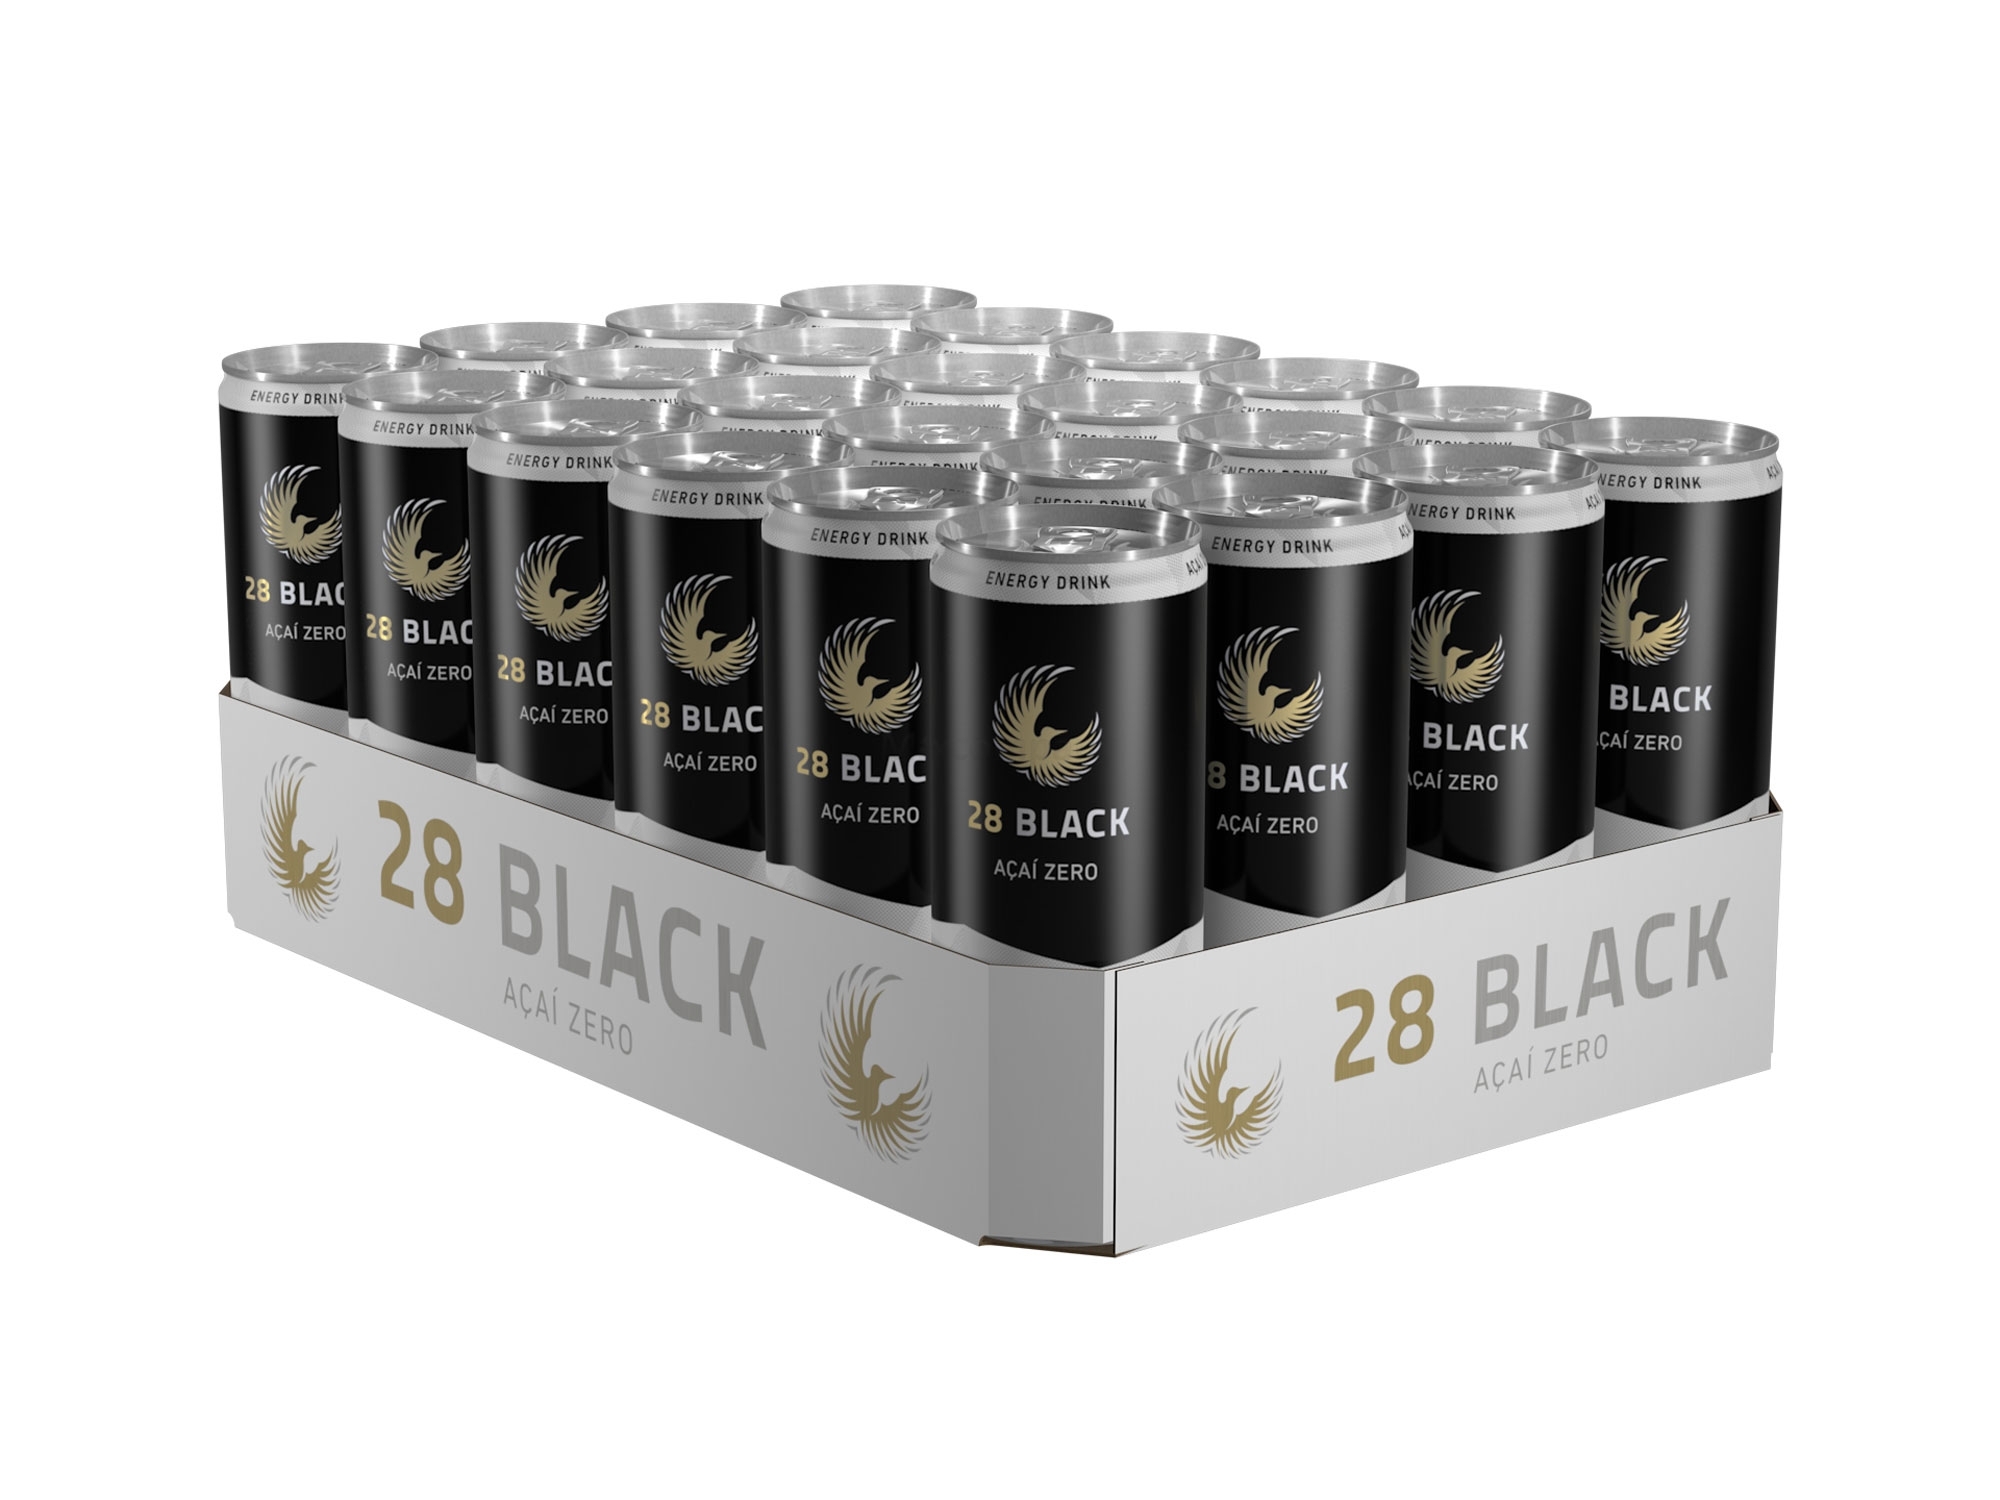 28 Black Acai Zero Energy Drink inkl. Pfand - 24x 250ml = 6l - EINWEG